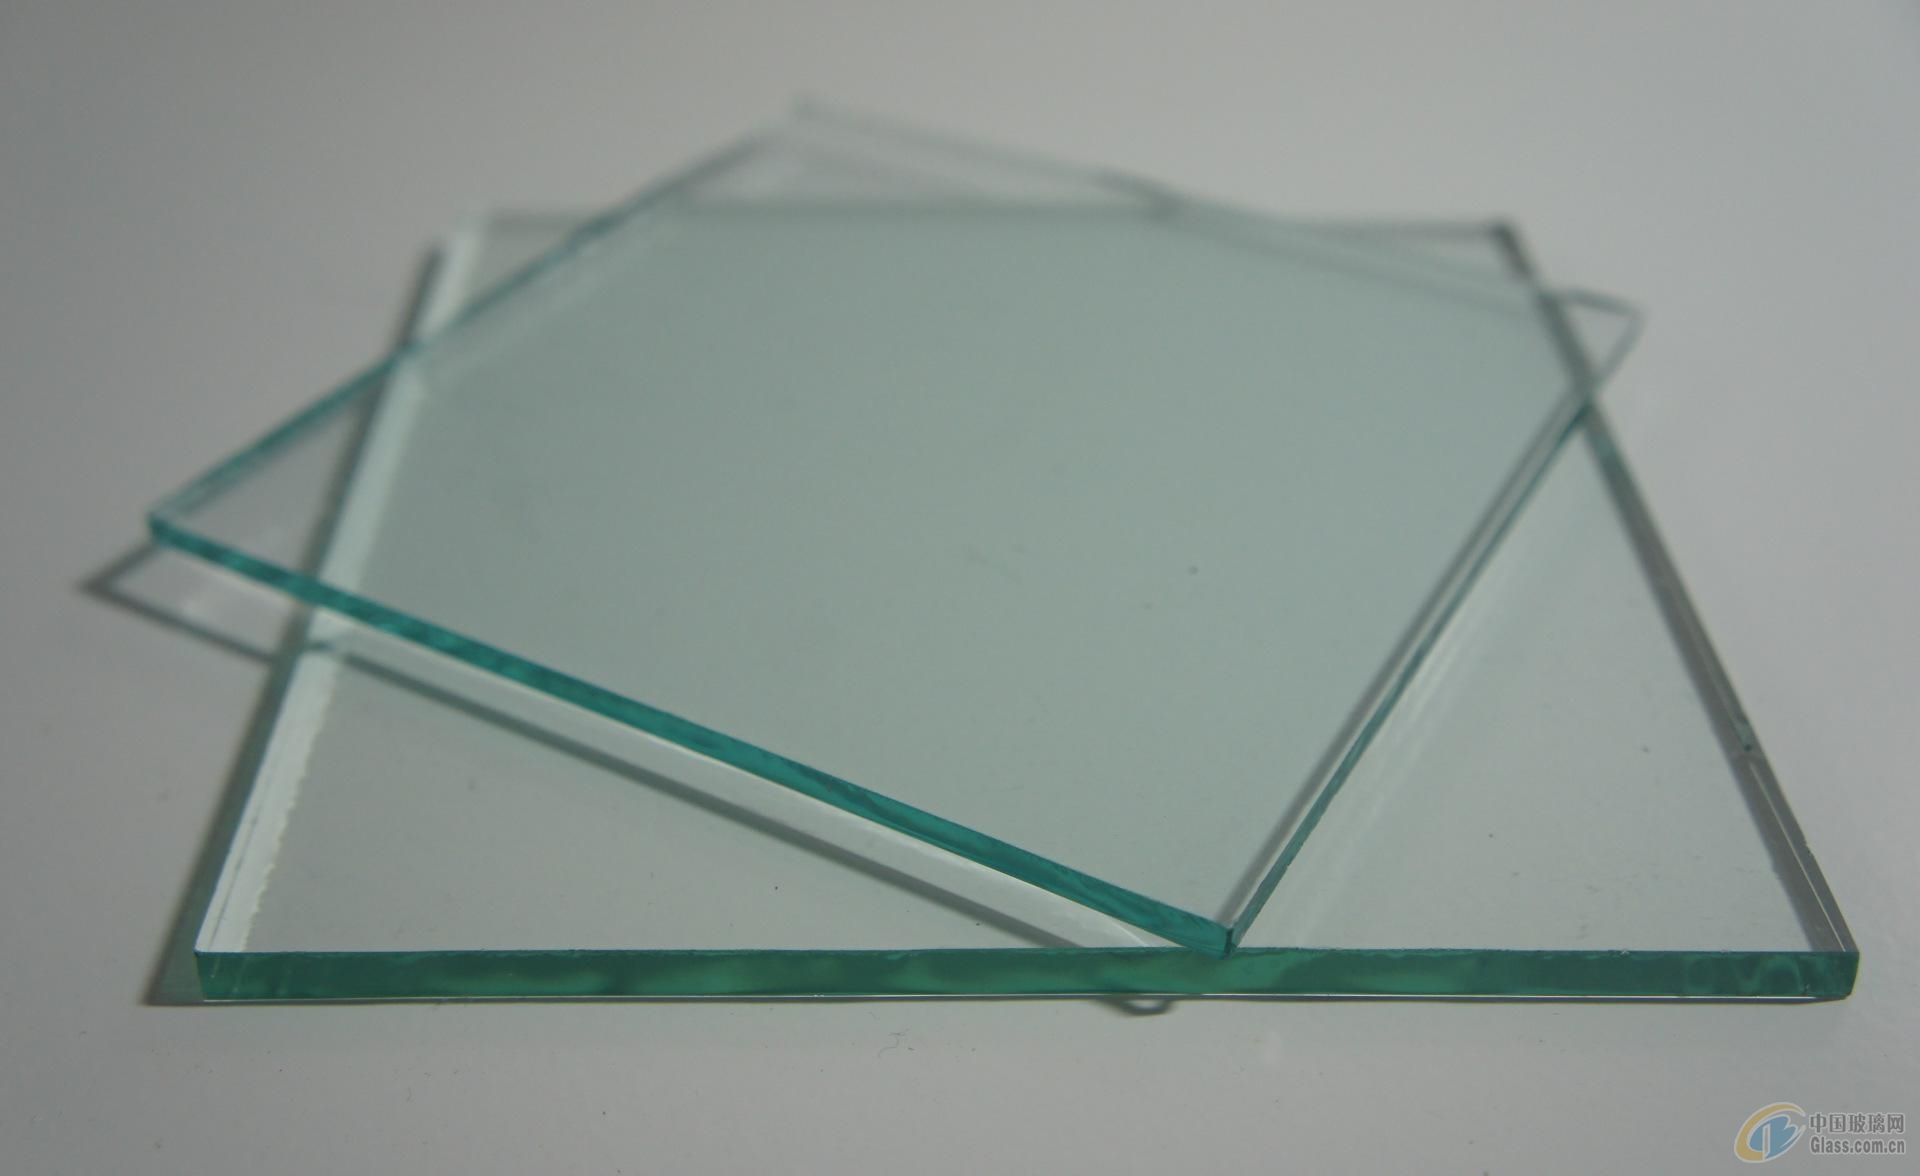 供应超薄玻璃 2mm浮法超薄玻璃